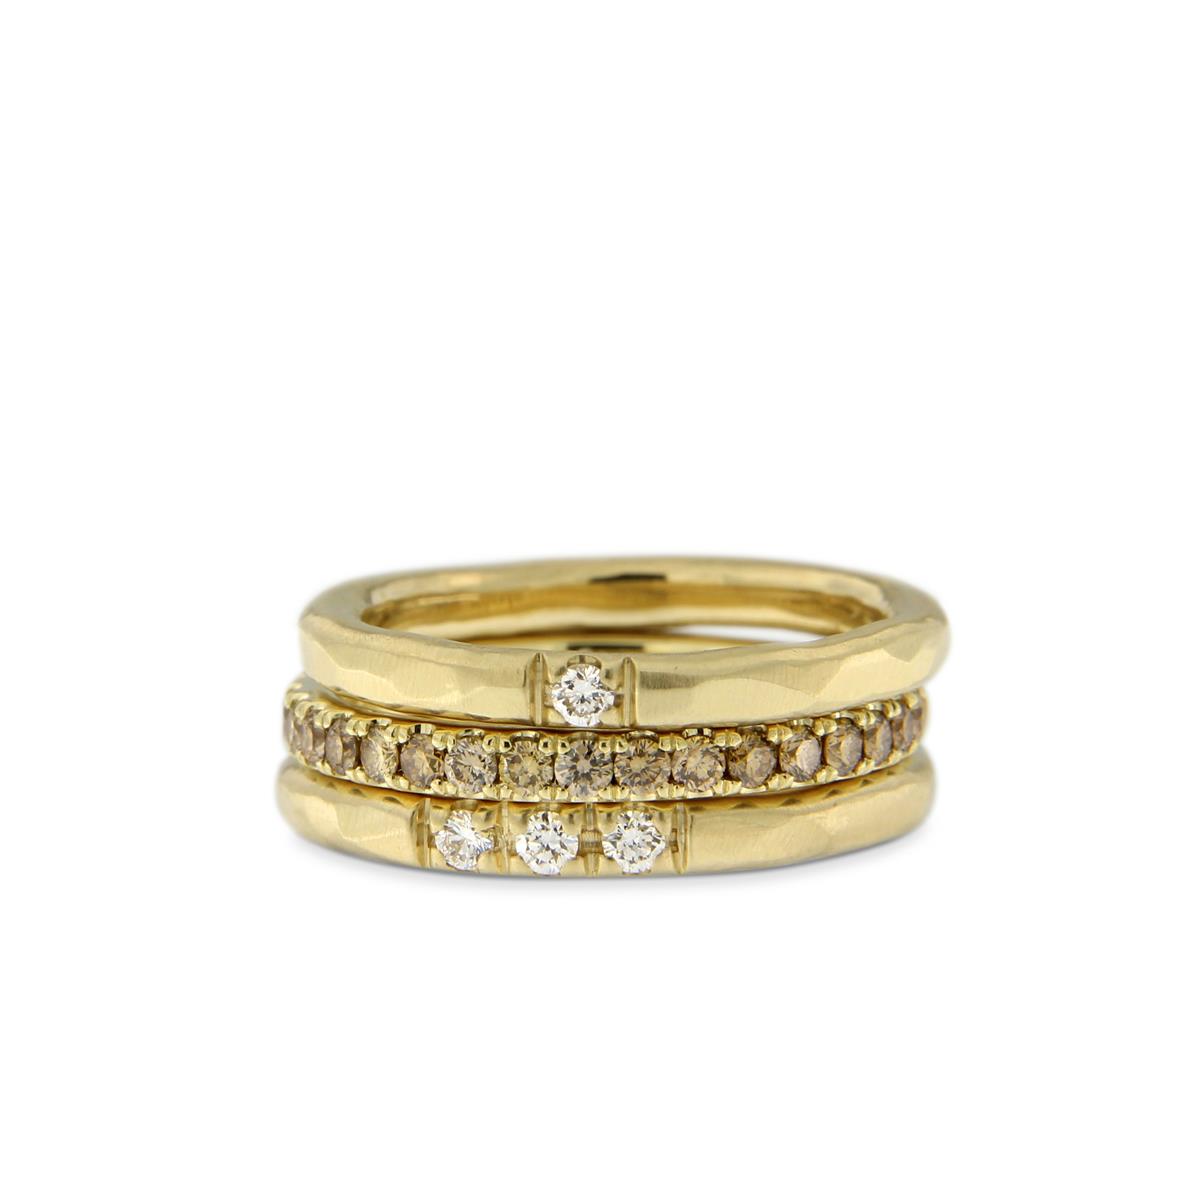 Katie g. Jewellery - Stack aus gehämmerten Ringen mit weißen Brillanten und Memoir Ring mit braunen Brillanten - alles aus 14kt. Champagnergold